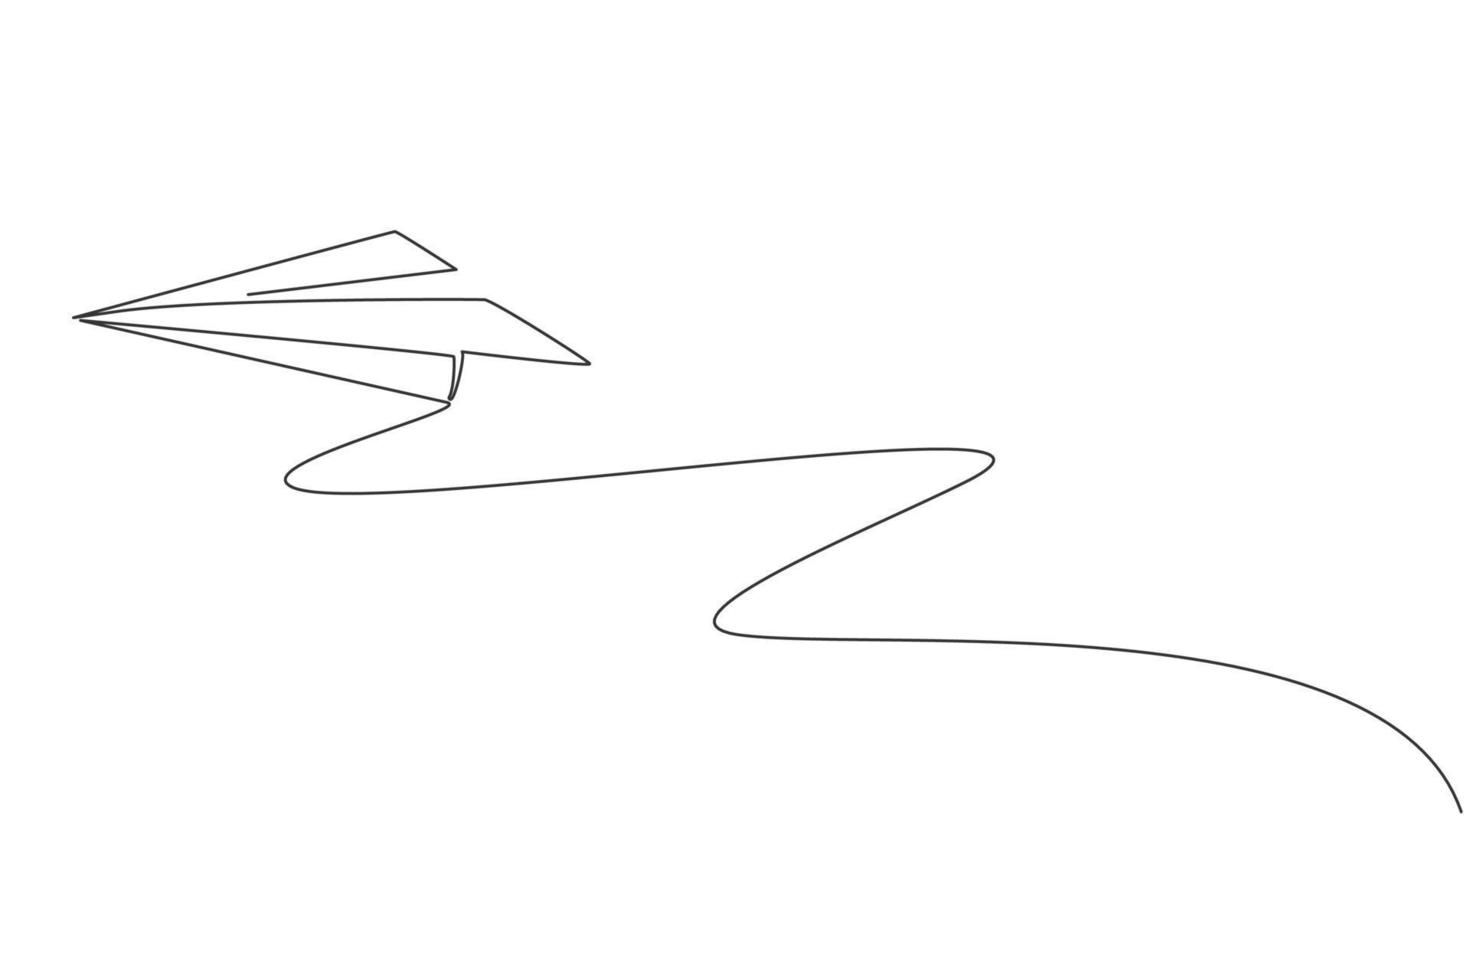 einzelne durchgehende Strichzeichnung des fliegenden Papierflugzeugs am Himmel. Origami-Spielzeugkonzept. trendige Grafikdesign-Vektorillustration mit einer Linie zeichnen vektor